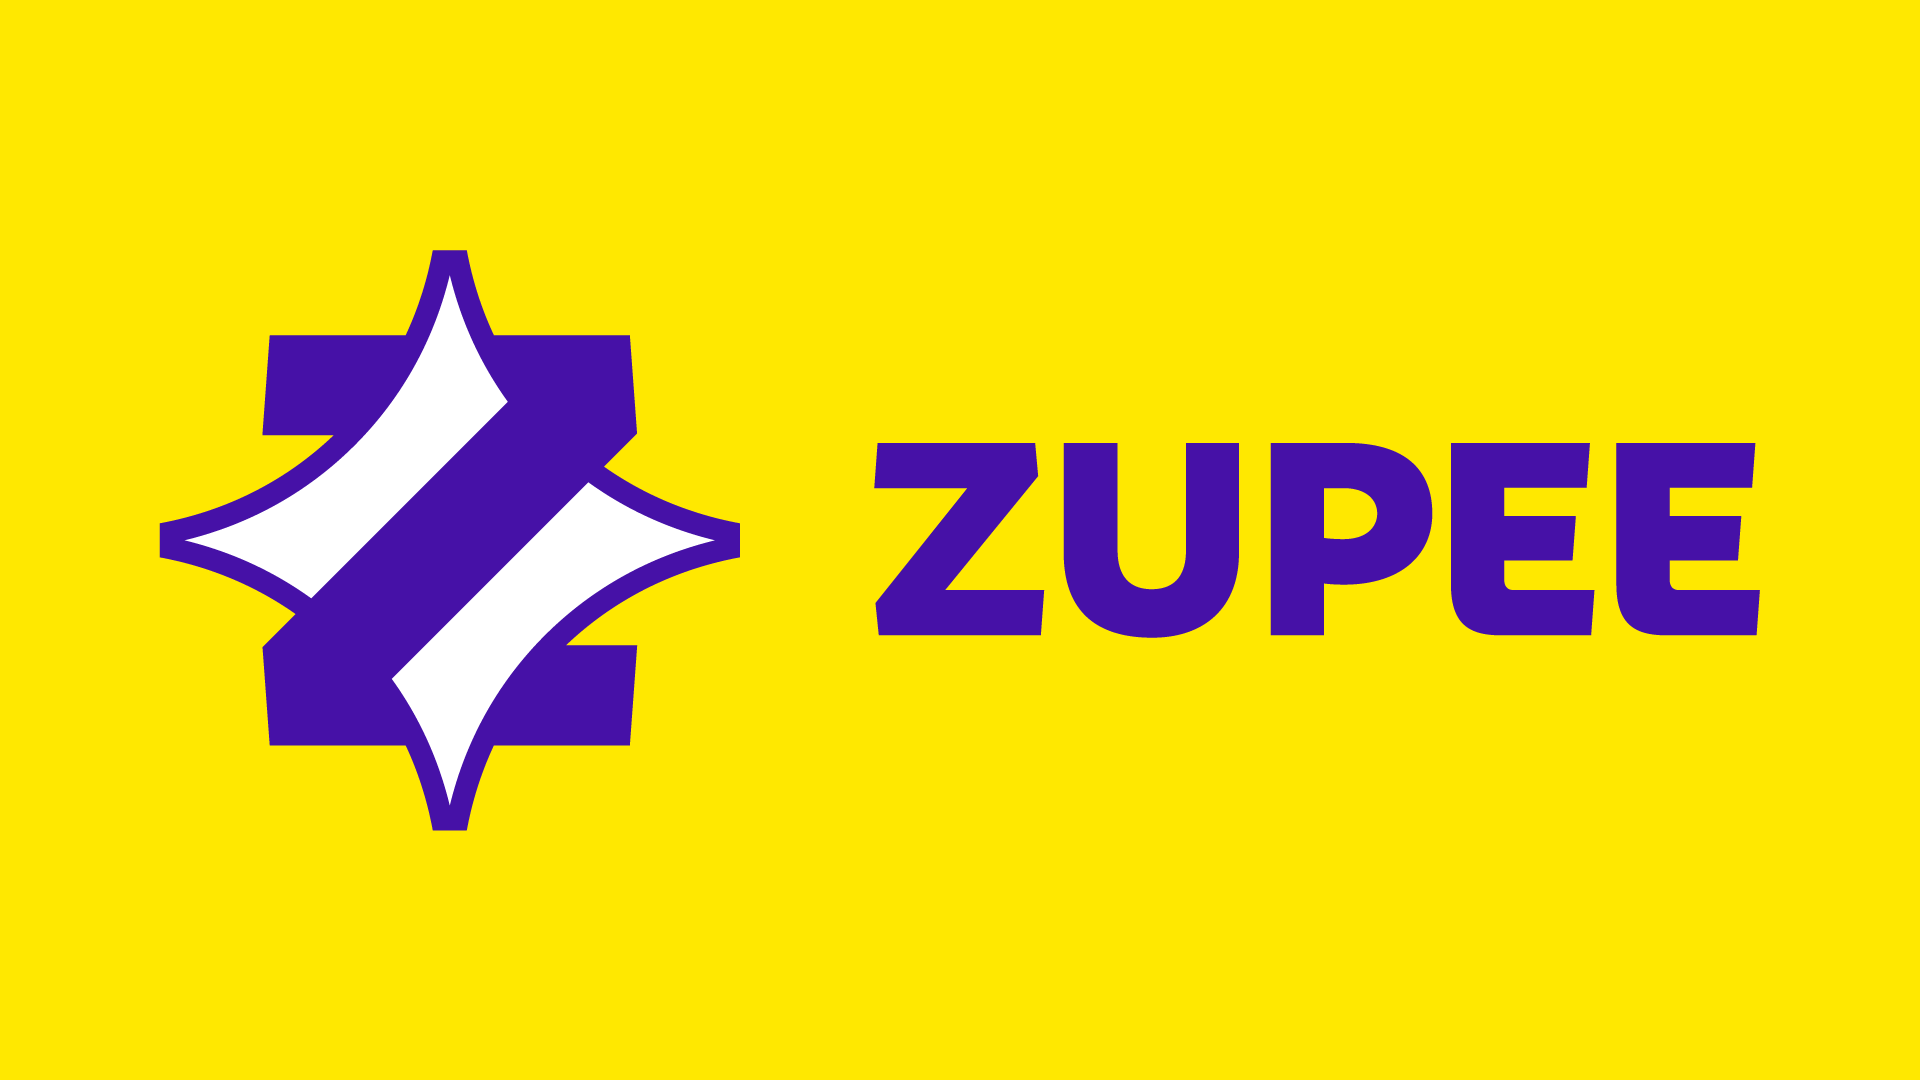 ZUPEE 5 تصوير الشاشة